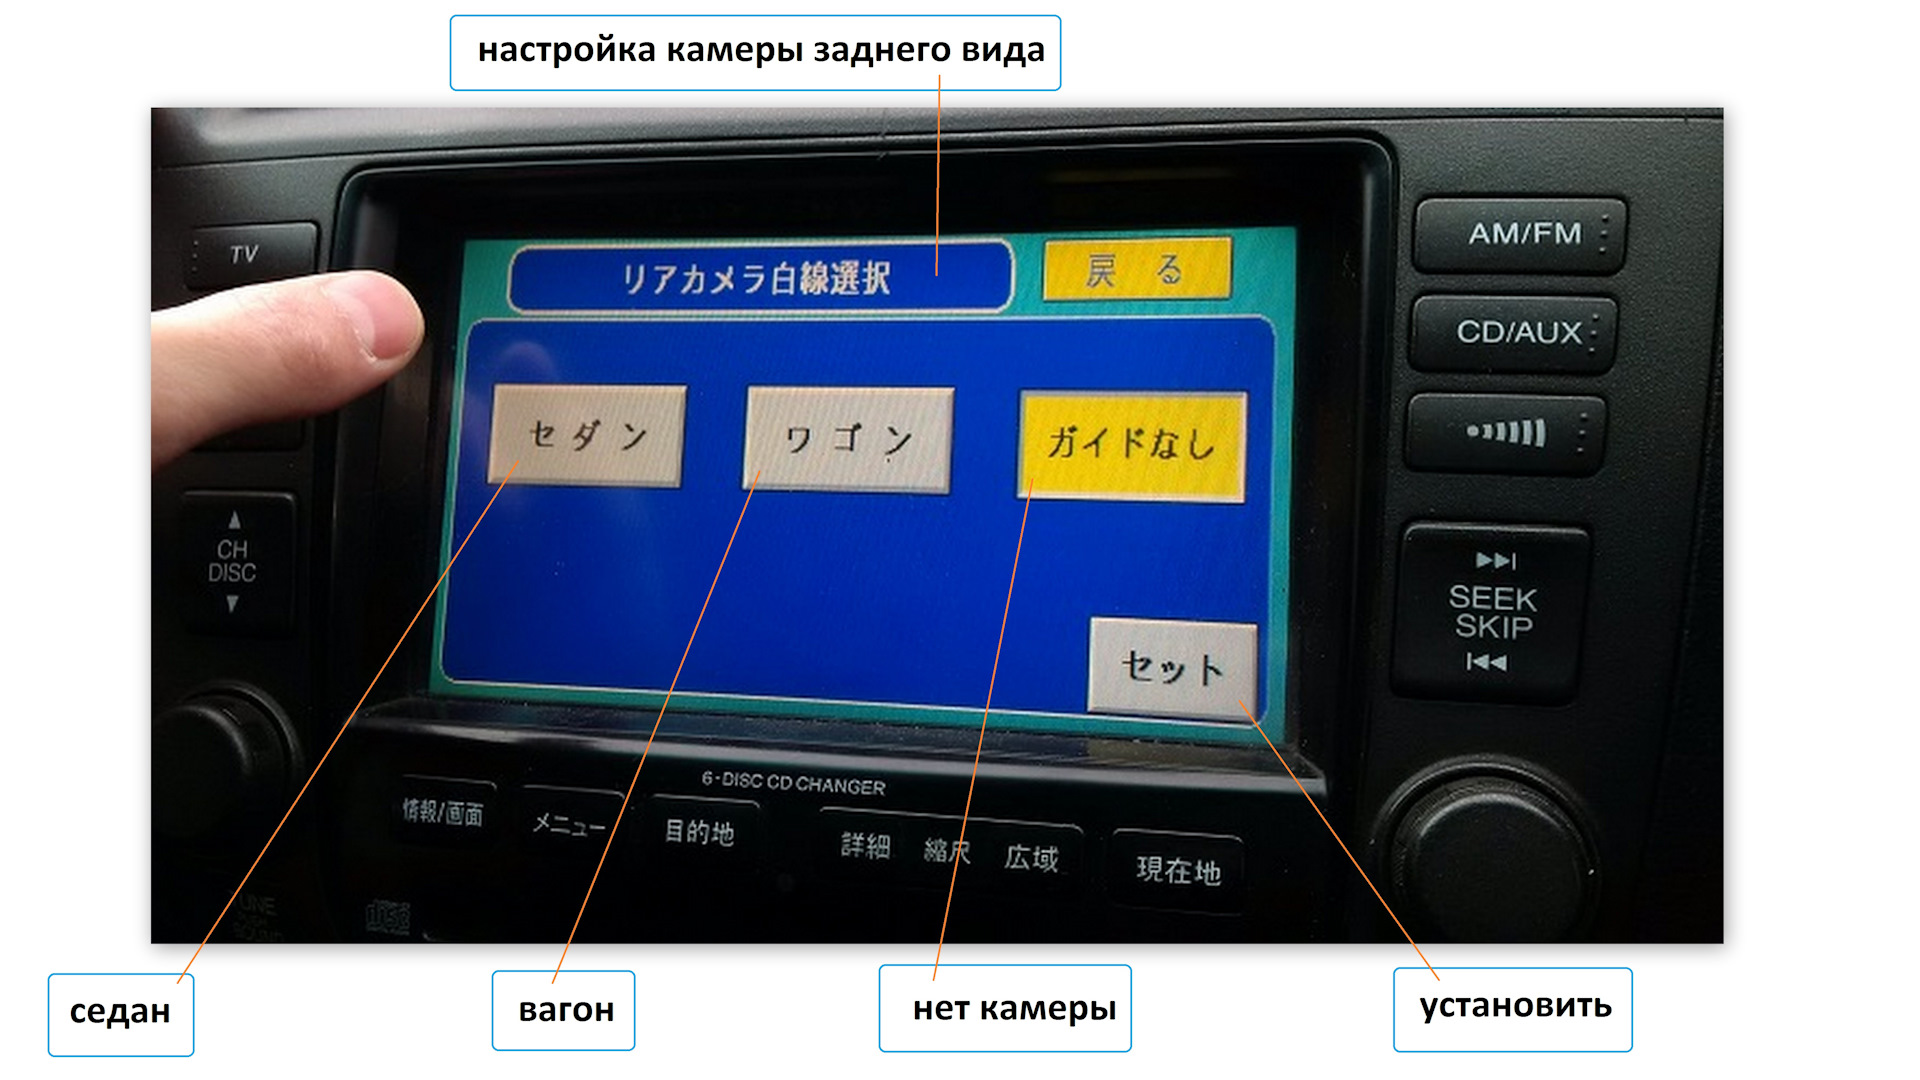 Хороший переводчик с японского. Японская магнитола Mitsubishi internavi карта. Ниссан с японского на русский. Переводчик для магнитолы. Как перевести магнитолу с японского на русский.